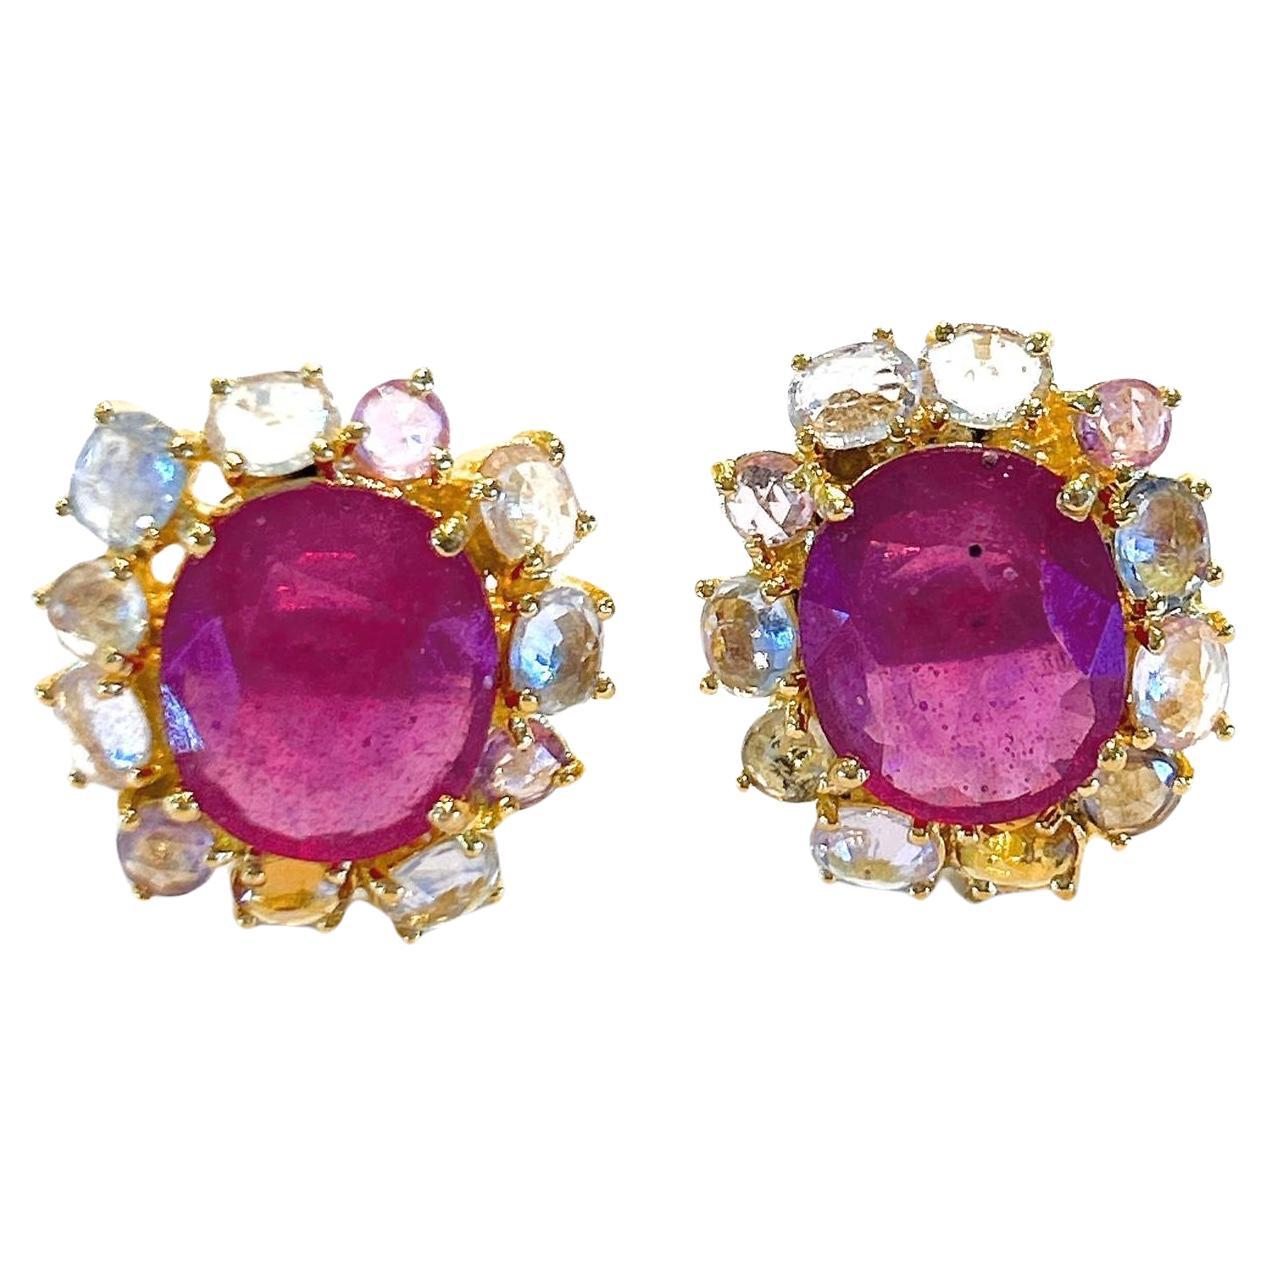 Bochic Orient Rubin & mehrfarbige Saphir-Ohrringe aus 18 Karat Gold und Silber 

Die Ohrringe aus der Reisekollektion 